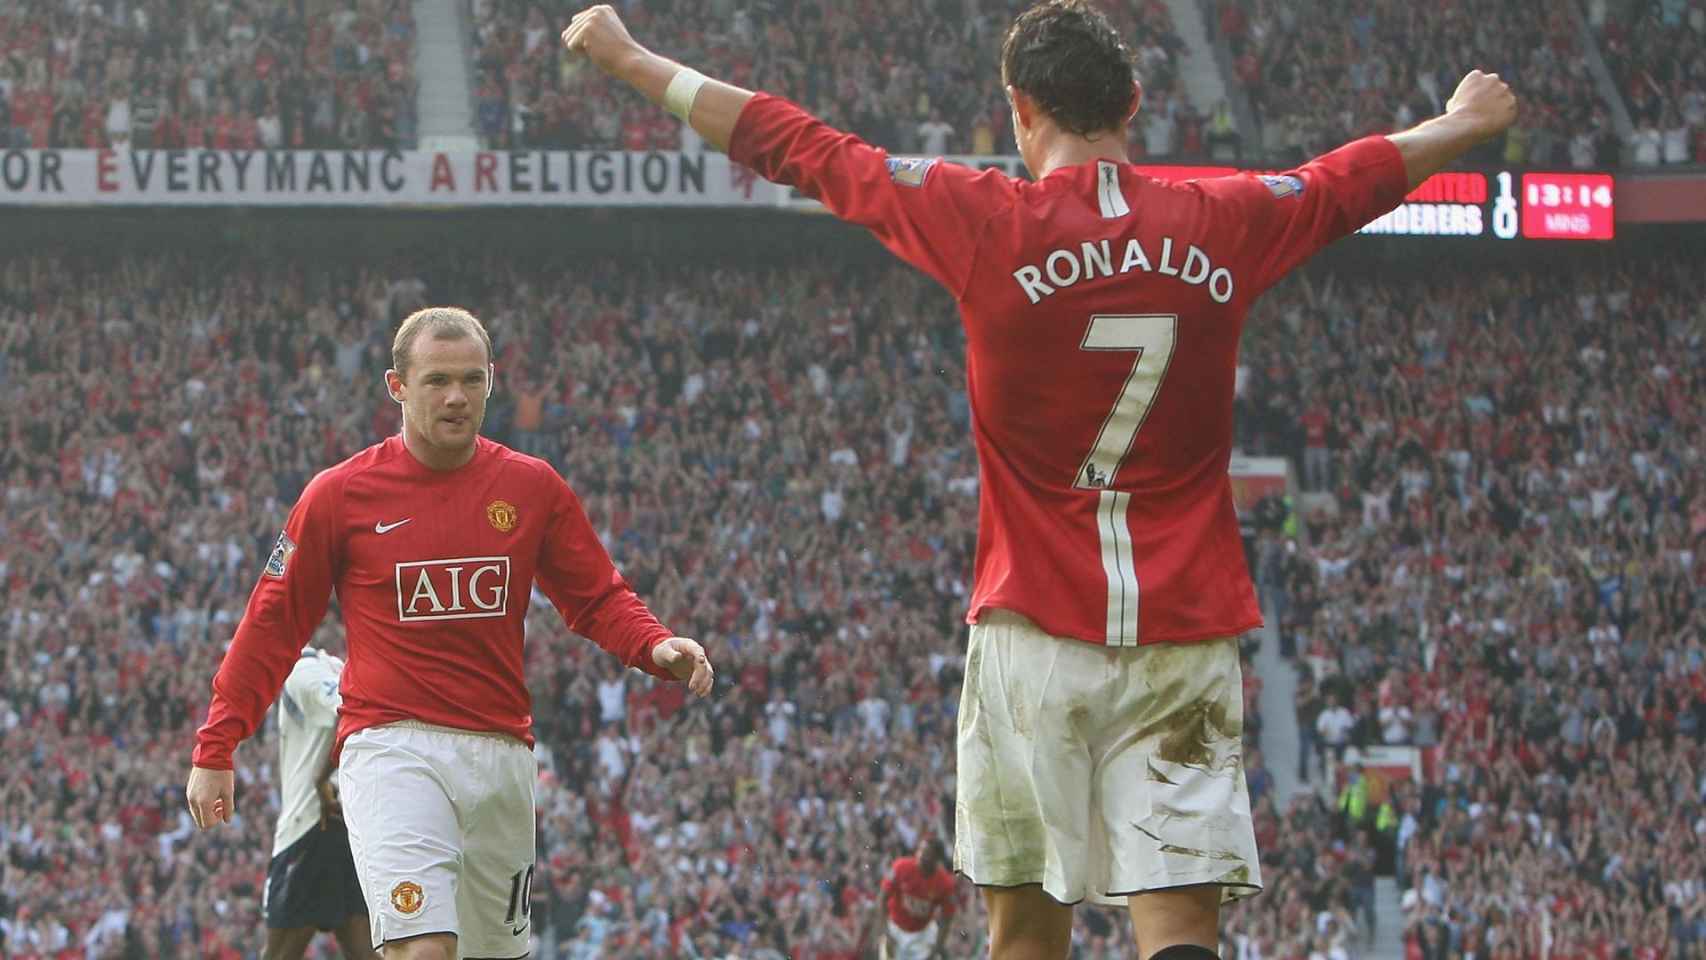 Wayne Rooney y Cristiano Ronaldo en su etapa en el Manchester Utd. Foto: manutd.com